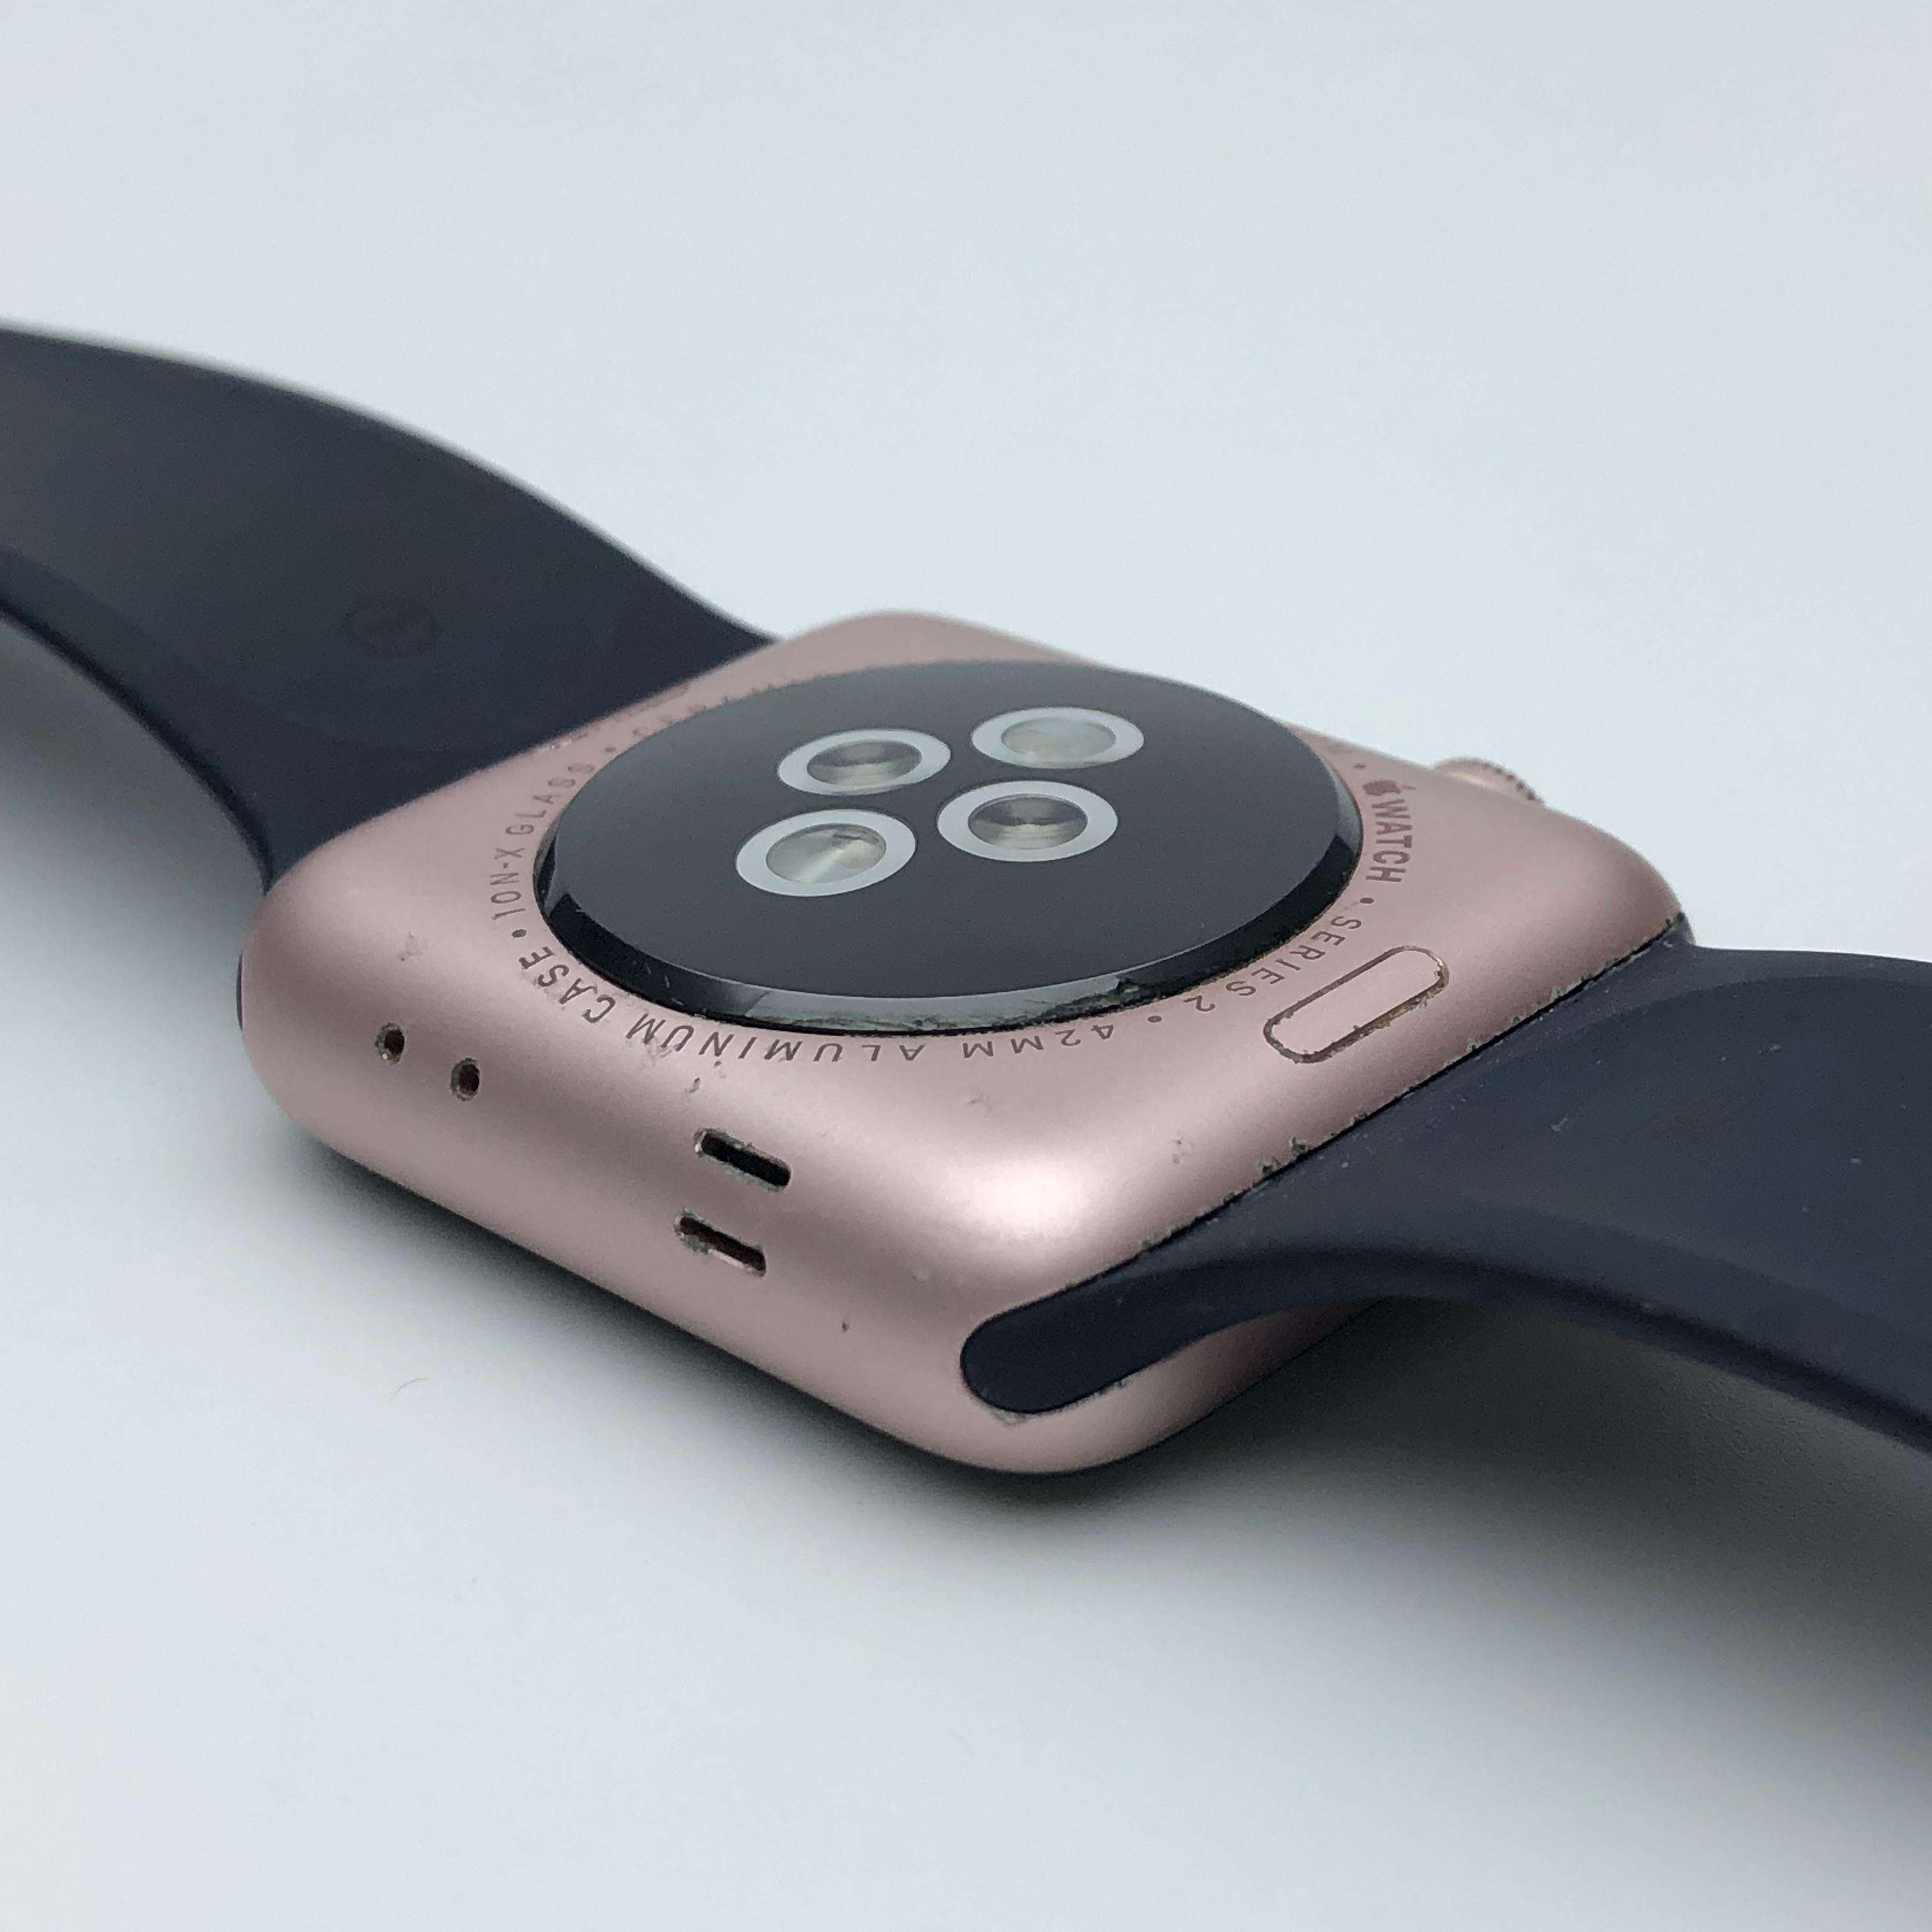 Apple Watch Series 2铝金属表壳 42MM 港版GPS版